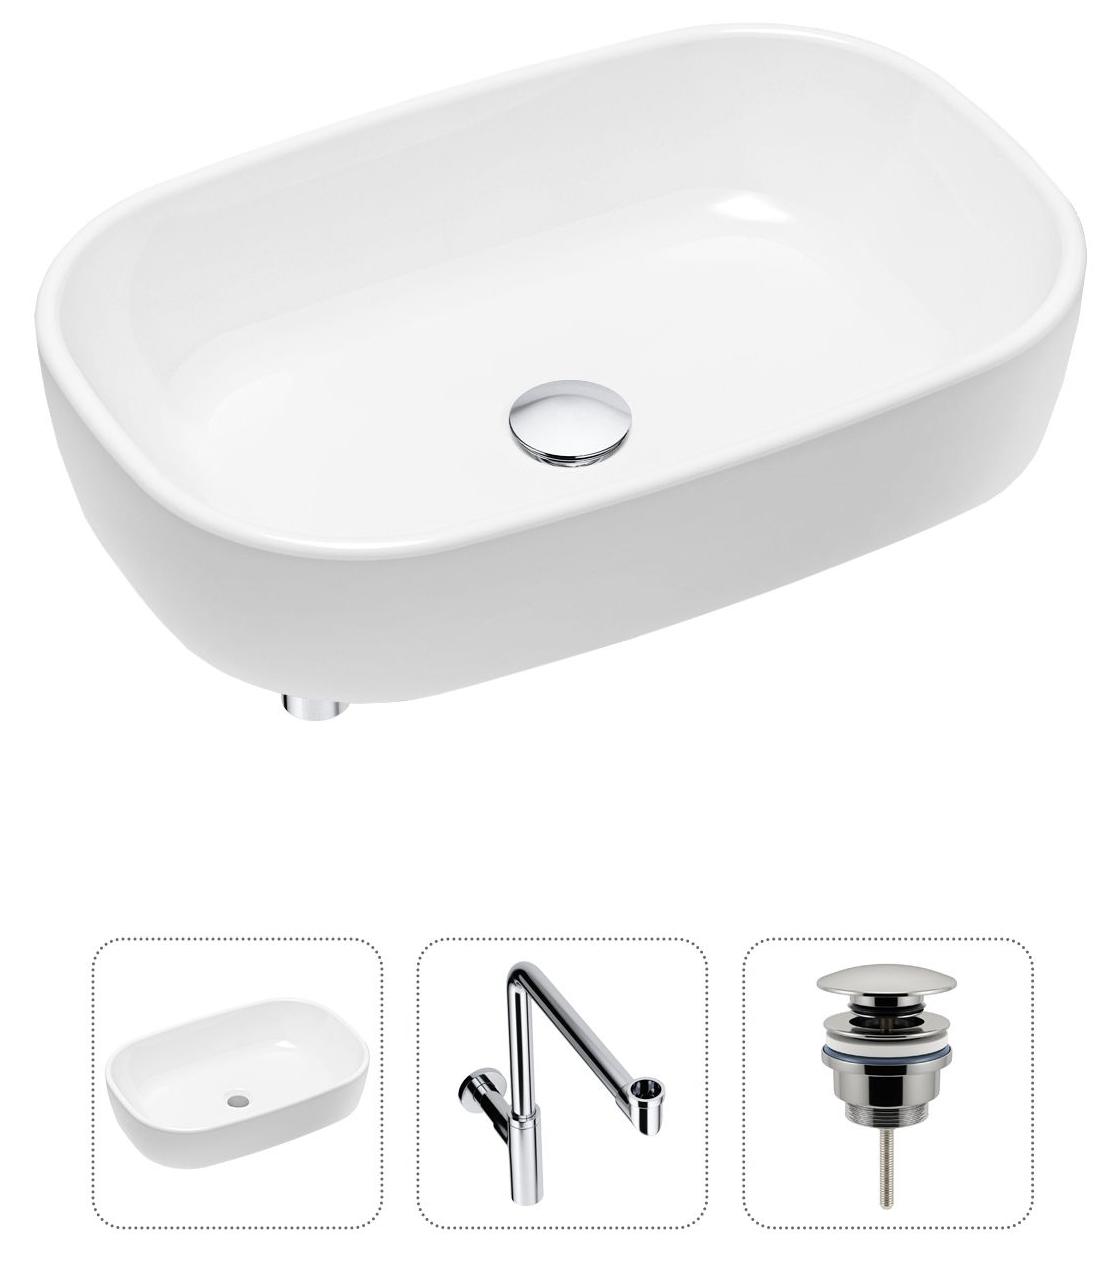 Комплект 3 в 1 Lavinia Boho Bathroom Sink 21520046: накладная фарфоровая раковина 54 см, металлический сифон, донный клапан